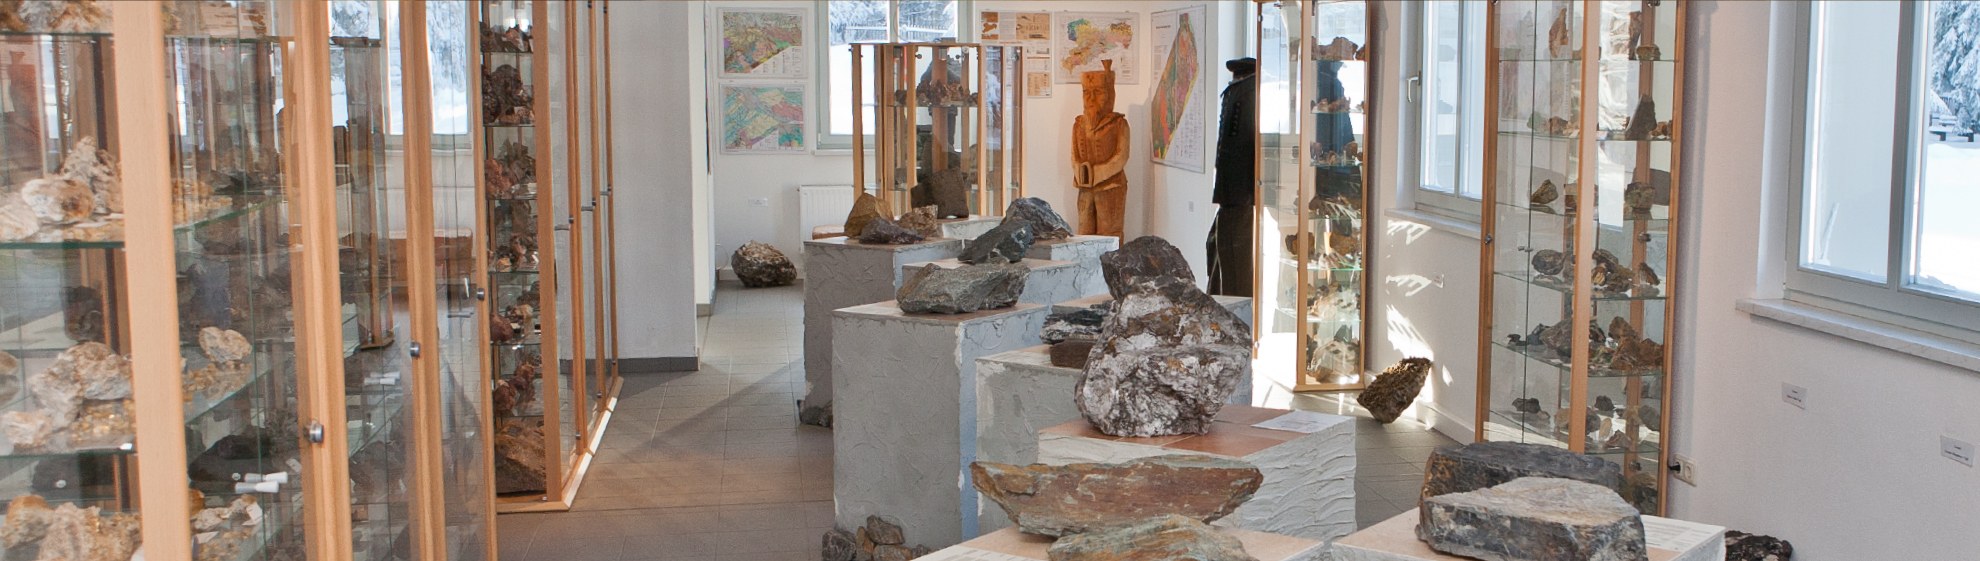 Mineralienzentrum Galerie